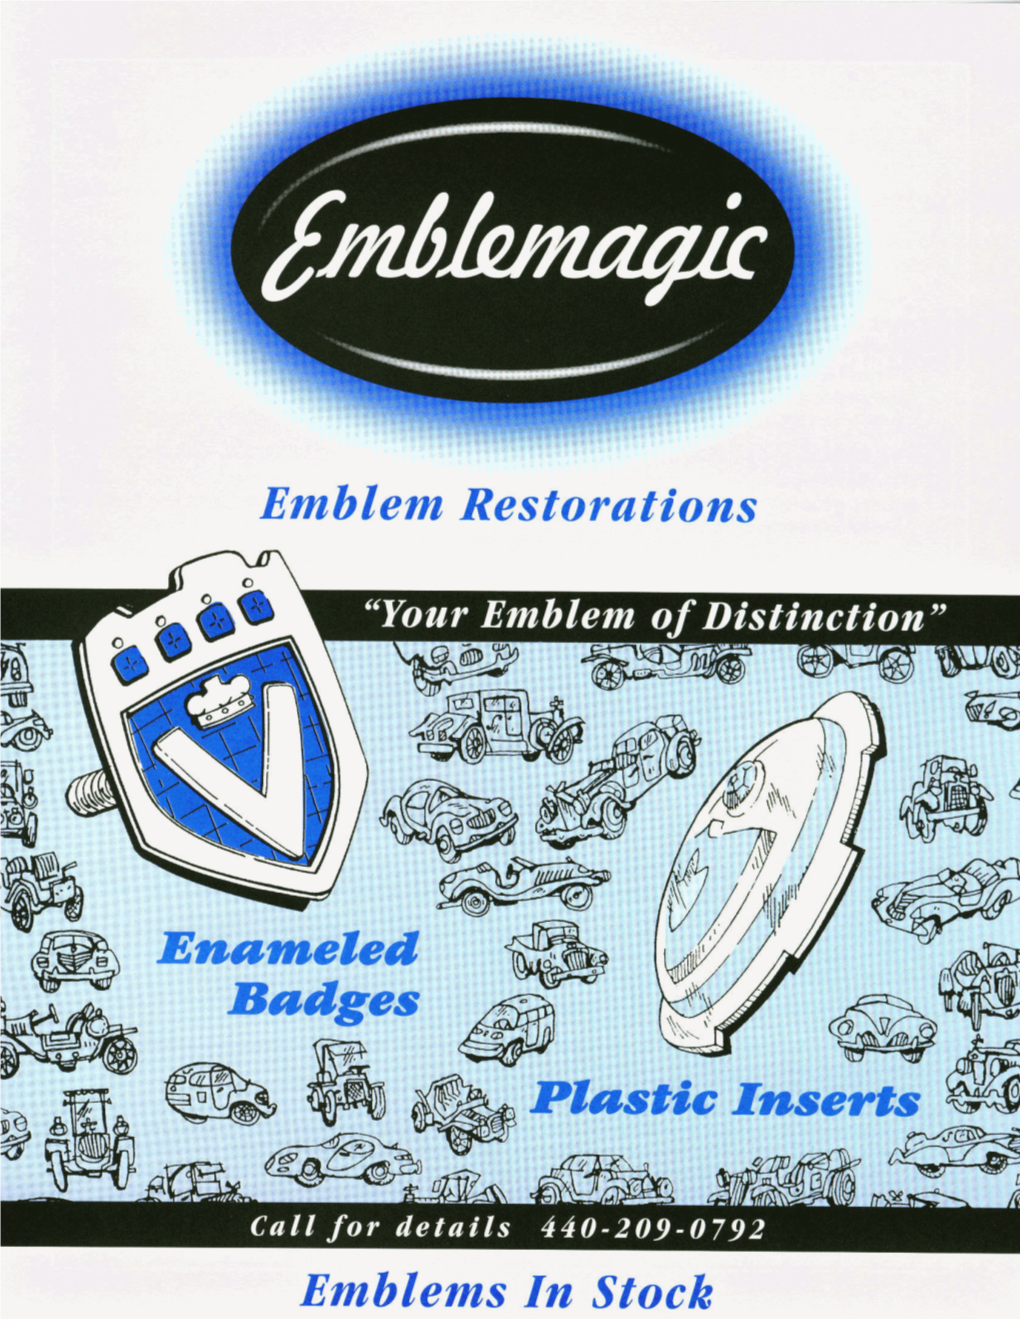 Emblem Restorations